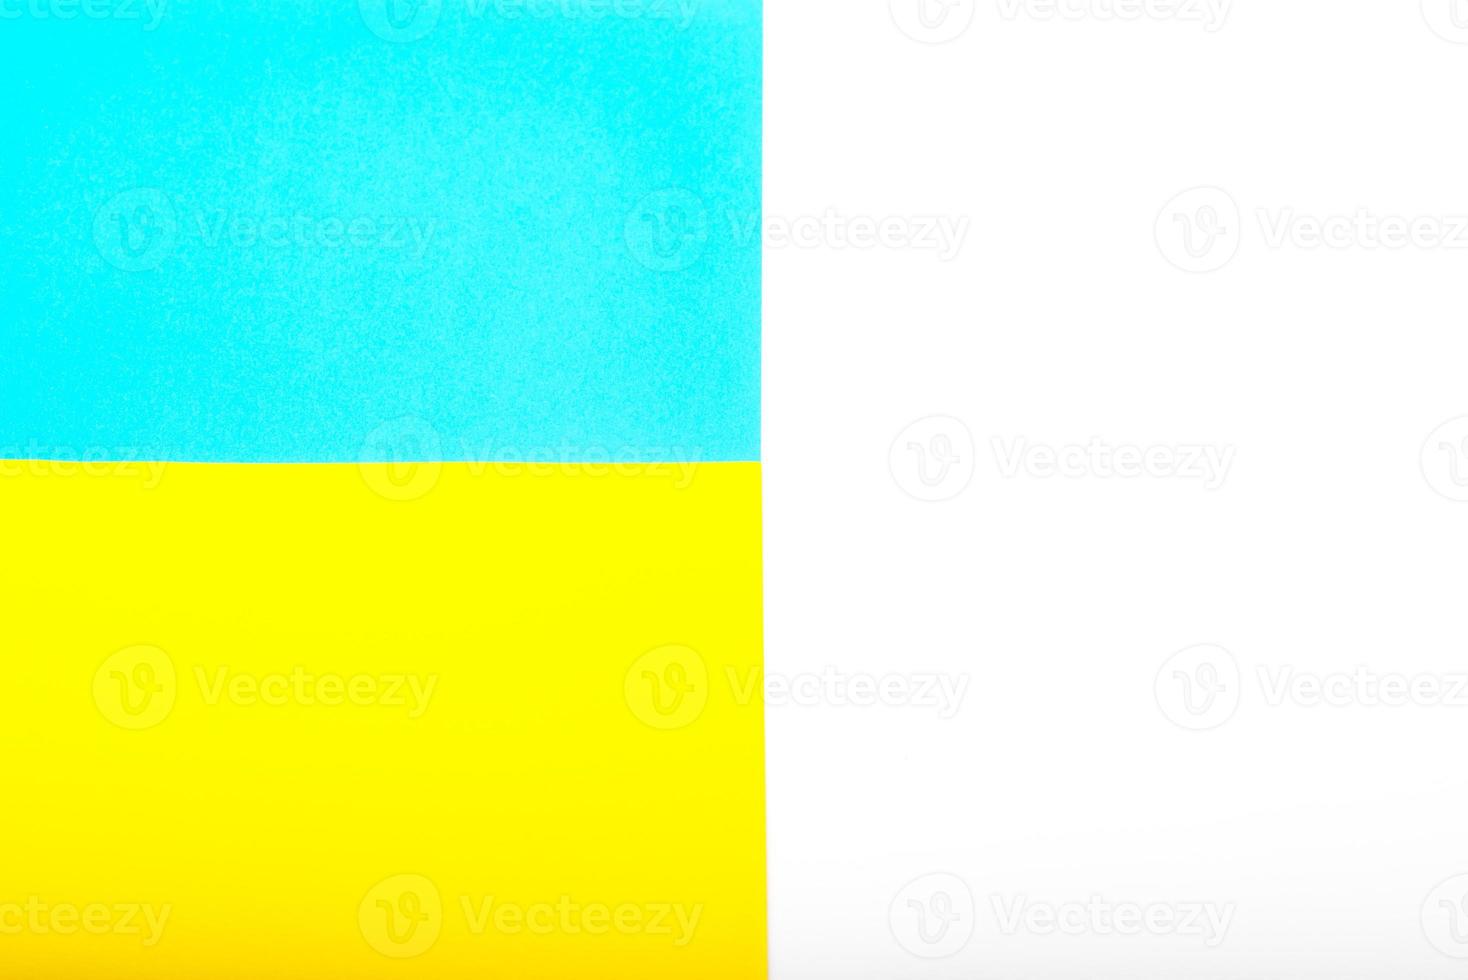 pappersgula och blå färger som Ukrainas symbolflaggor. bakgrund för protest mot krig, militär konflikt. foto